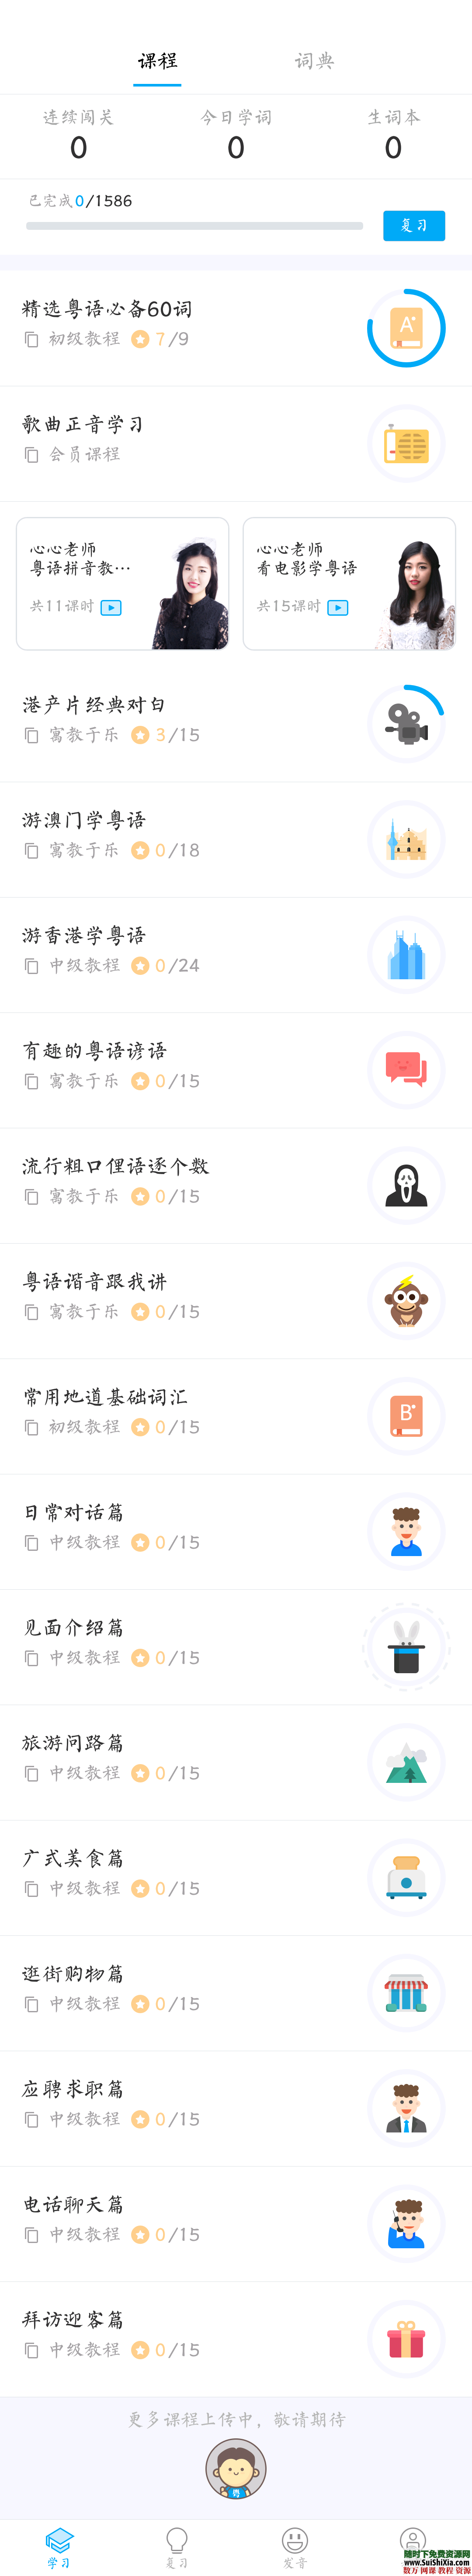 粤语app破解版学习神器  升级打怪式学习 第2张